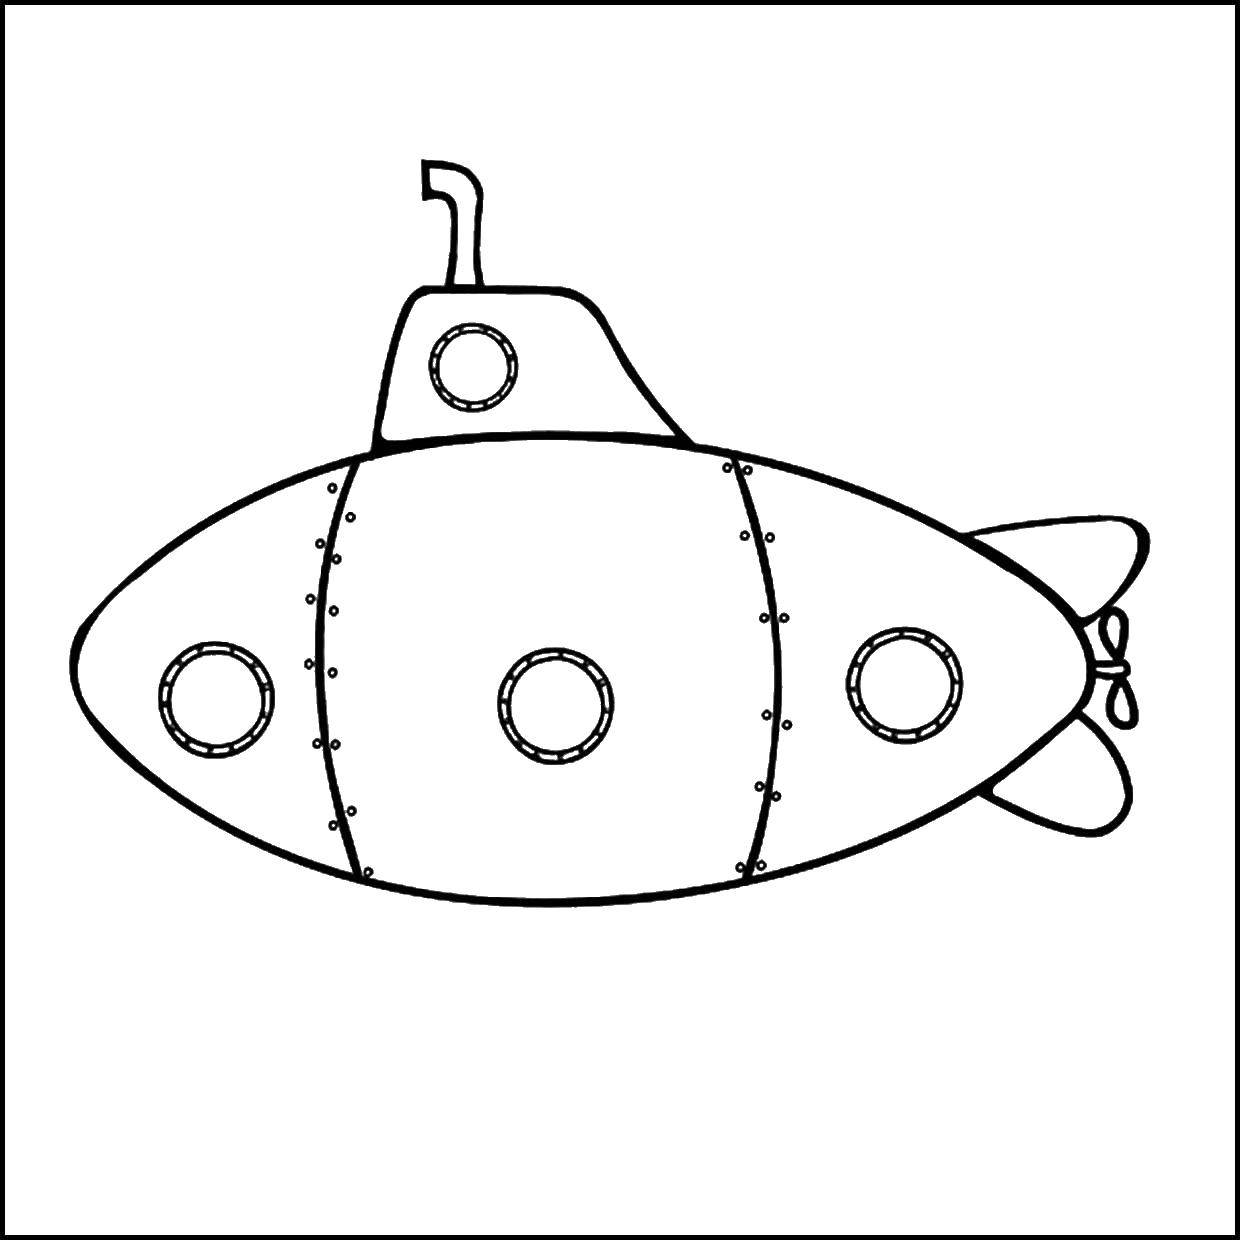 Название: Раскраска Подводная лодка. Категория: транспорт. Теги: подводный транспорт, лодка.